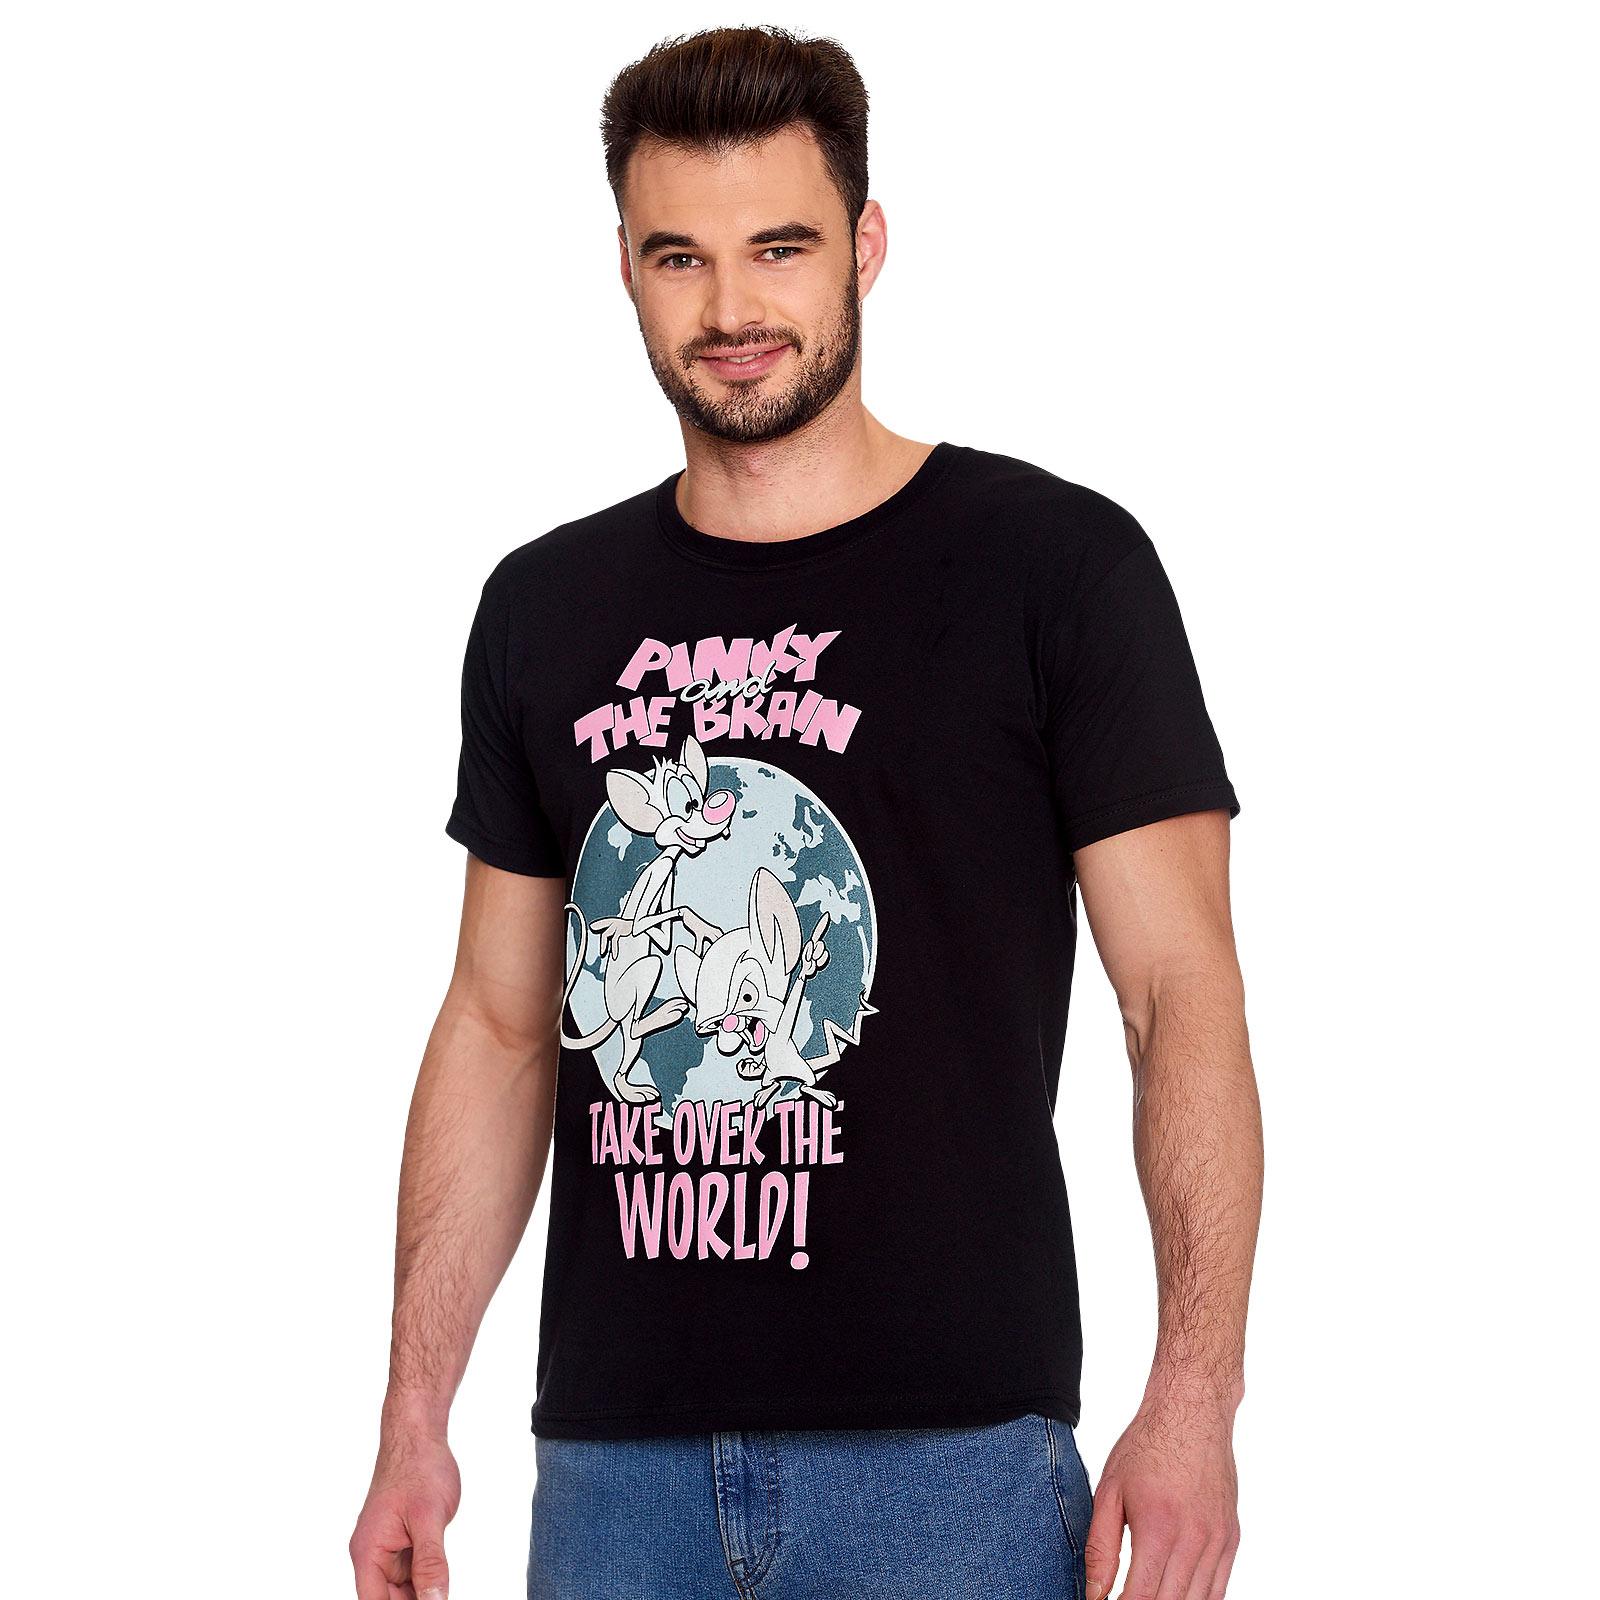 Pinky und der Brain - Take Over The World T-Shirt schwarz